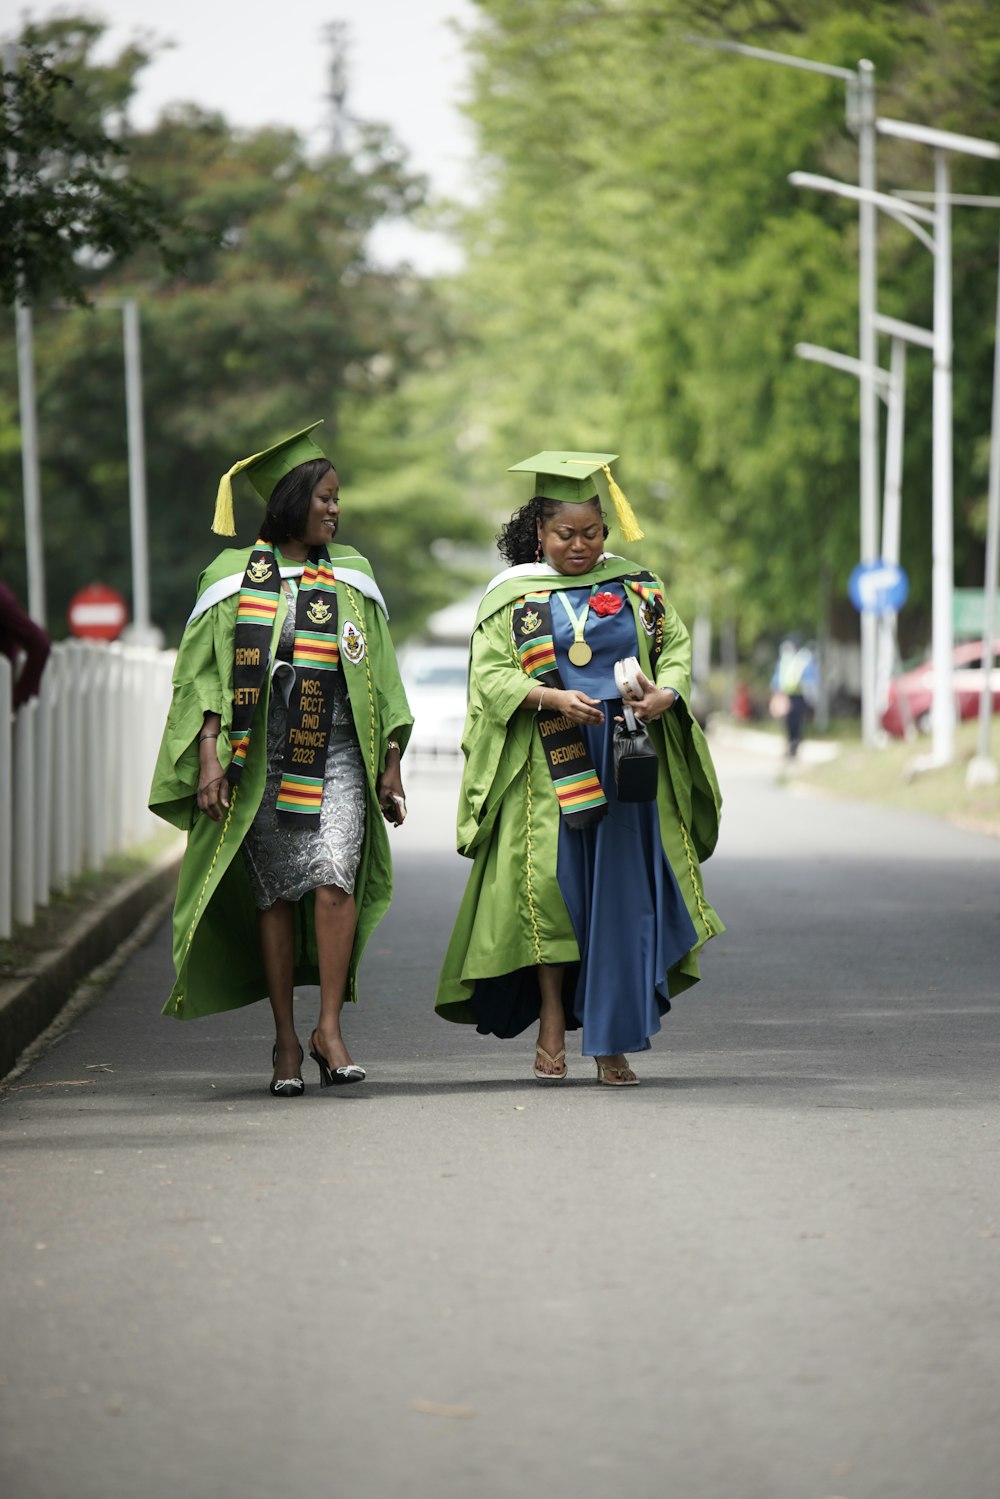 two women in graduation gowns walking down a street